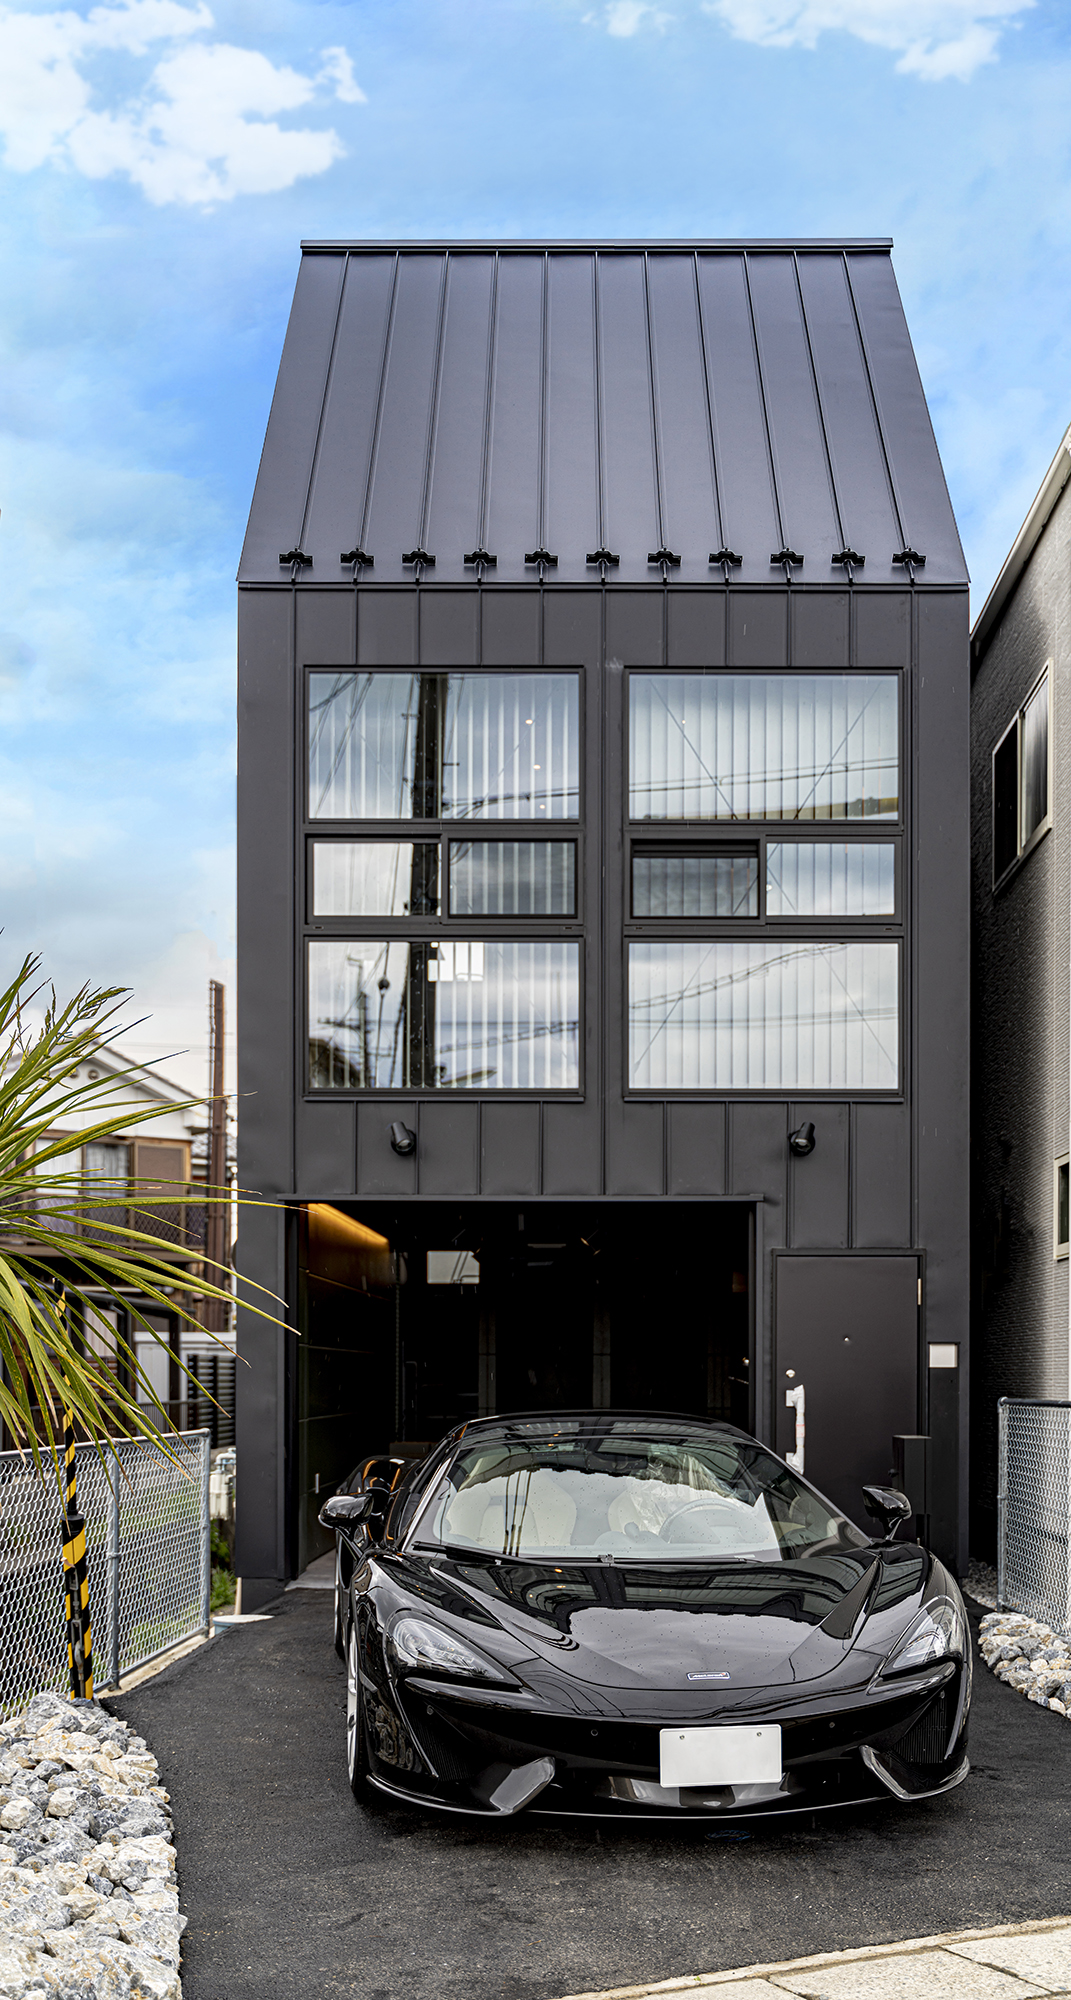 黒いガルバリウムの外壁がクール。インナーガレージが車とバイクを守ってくれる。倉庫風の無骨な外観デザイン